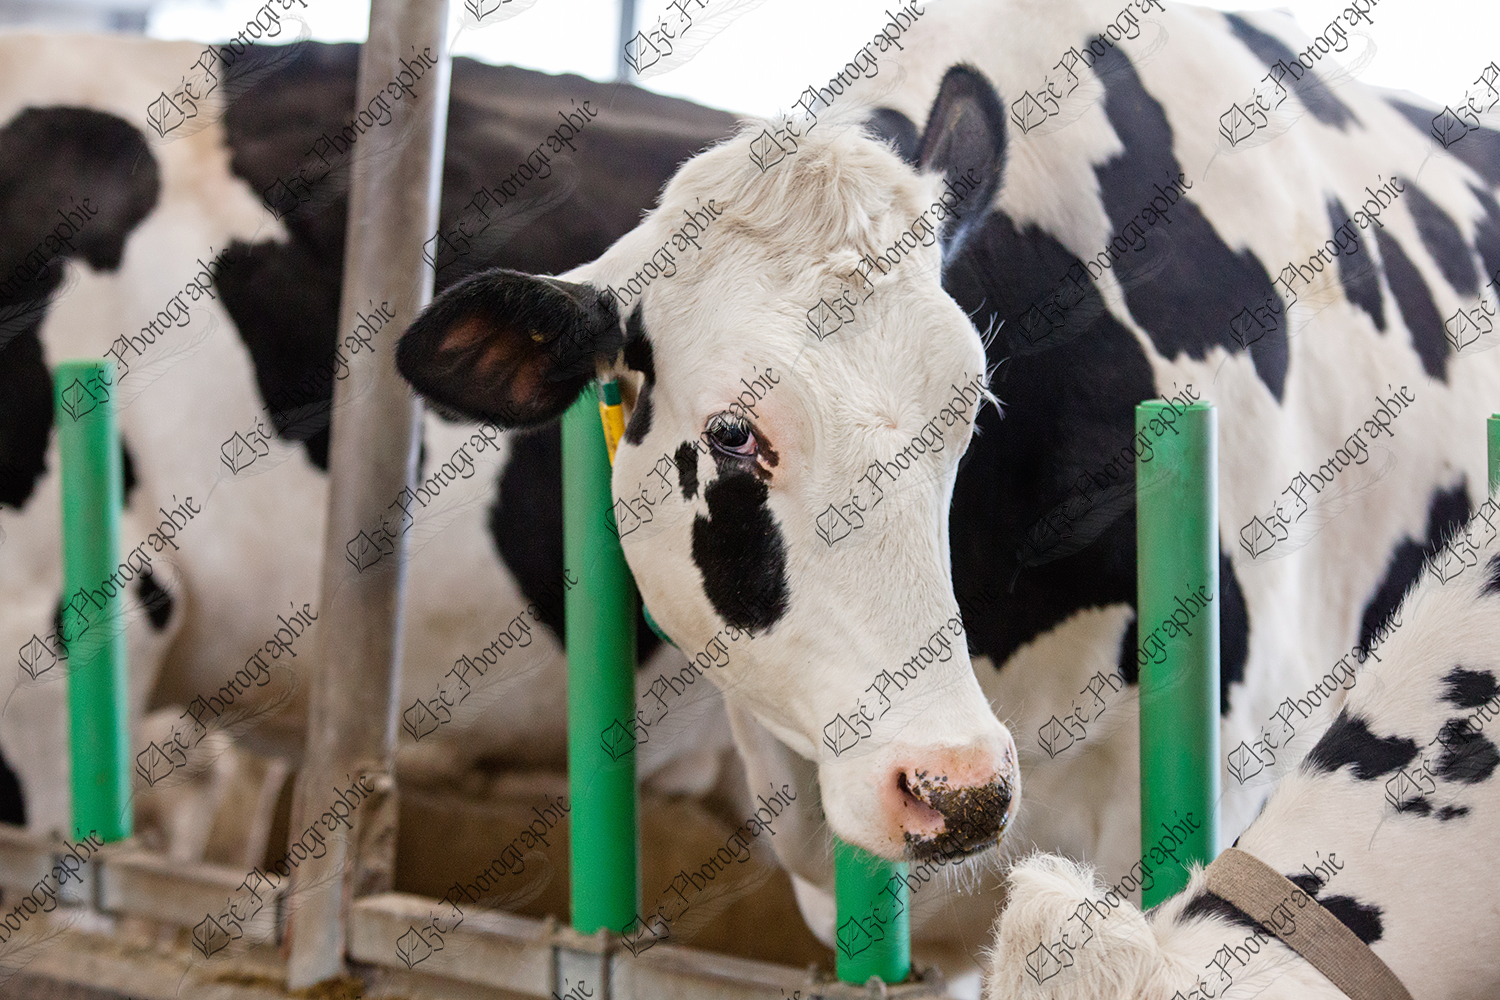 elze_photo_6057_vaches_ferme_laitiere_dairyfarm_cows